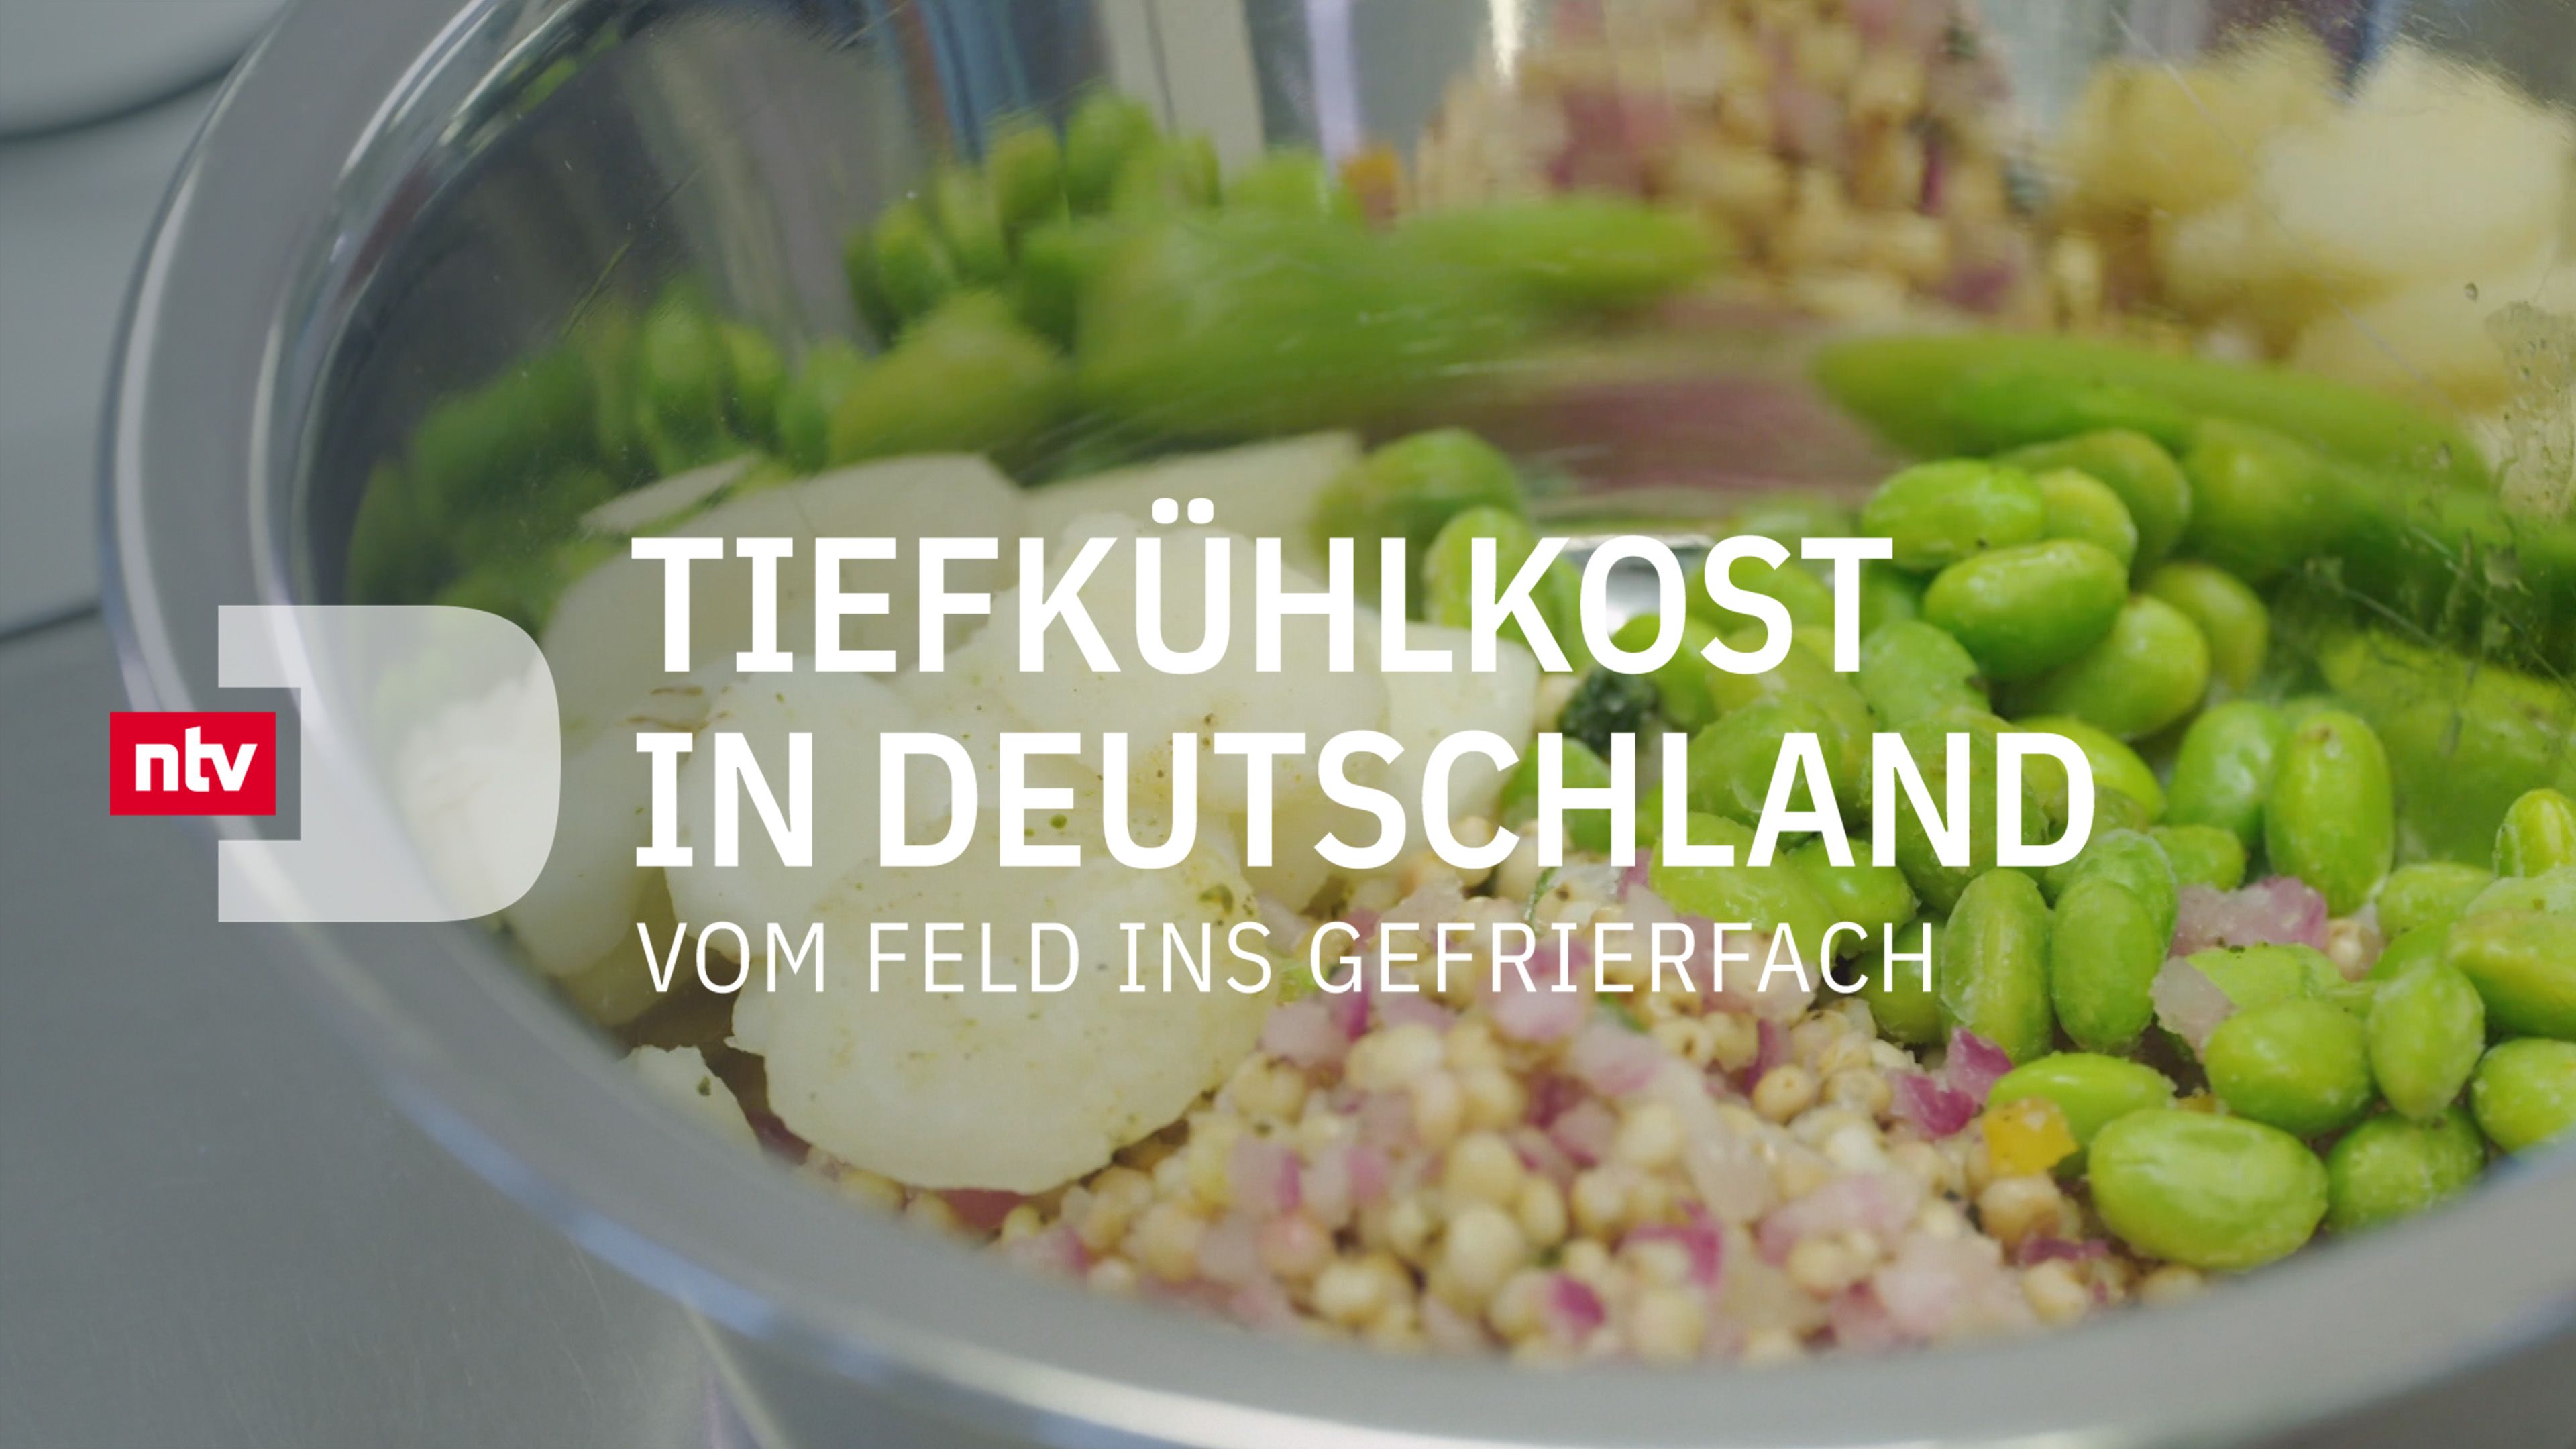 Tiefkühlkost in Deutschland - Vom Feld ins Gefrierfach